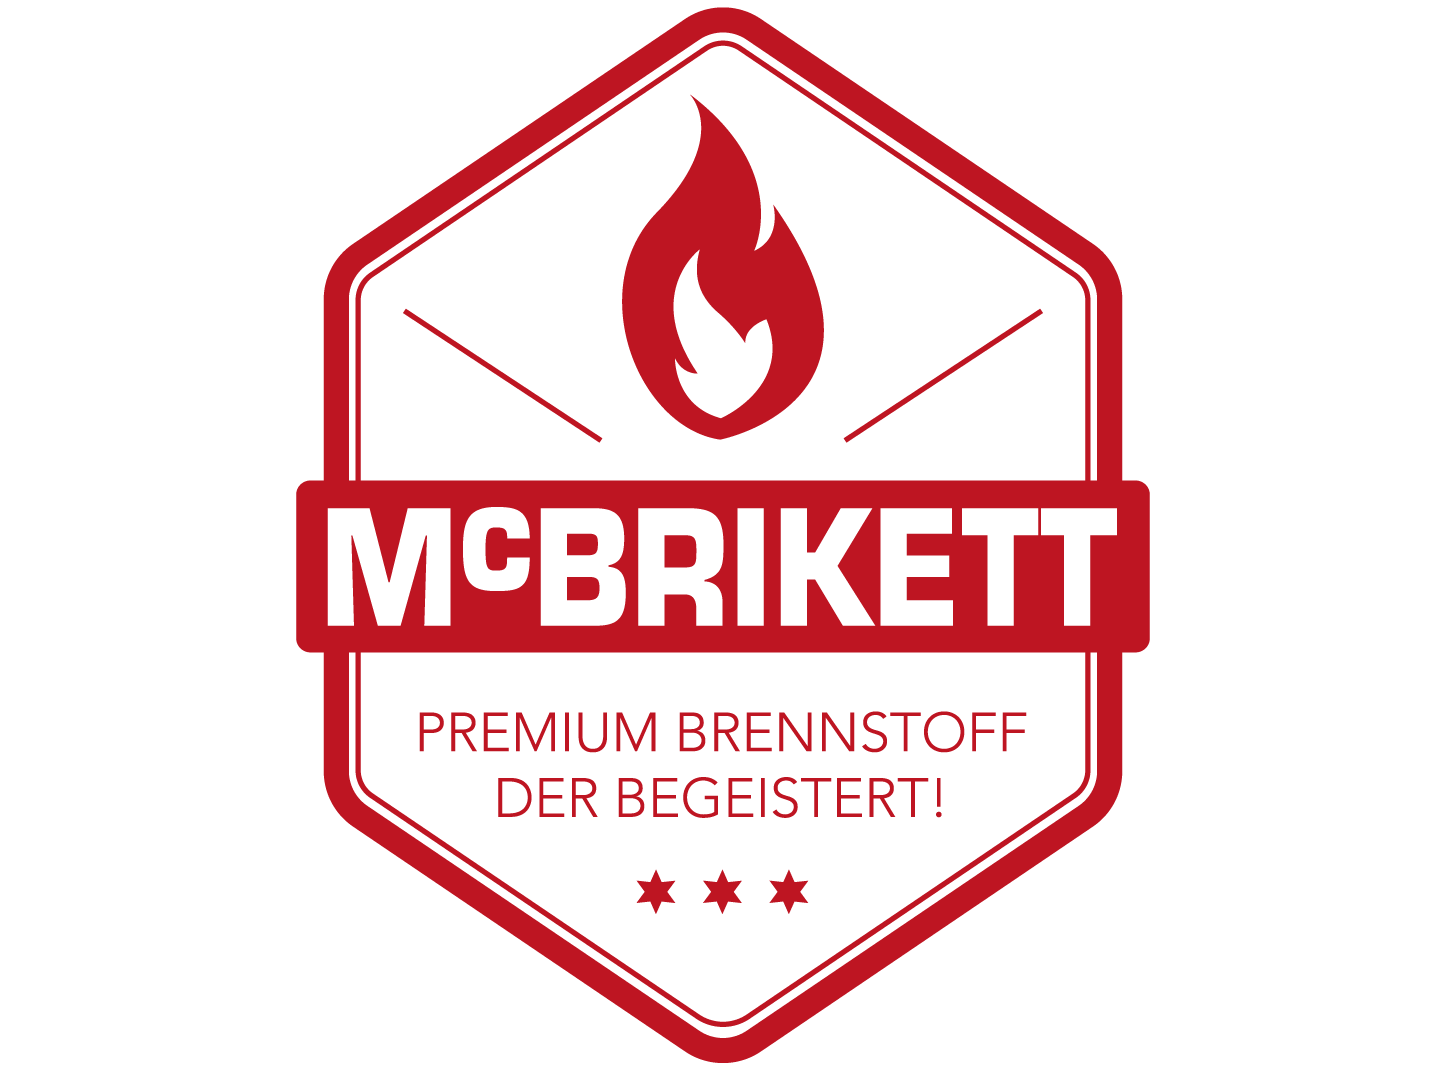 Mc-Brikett